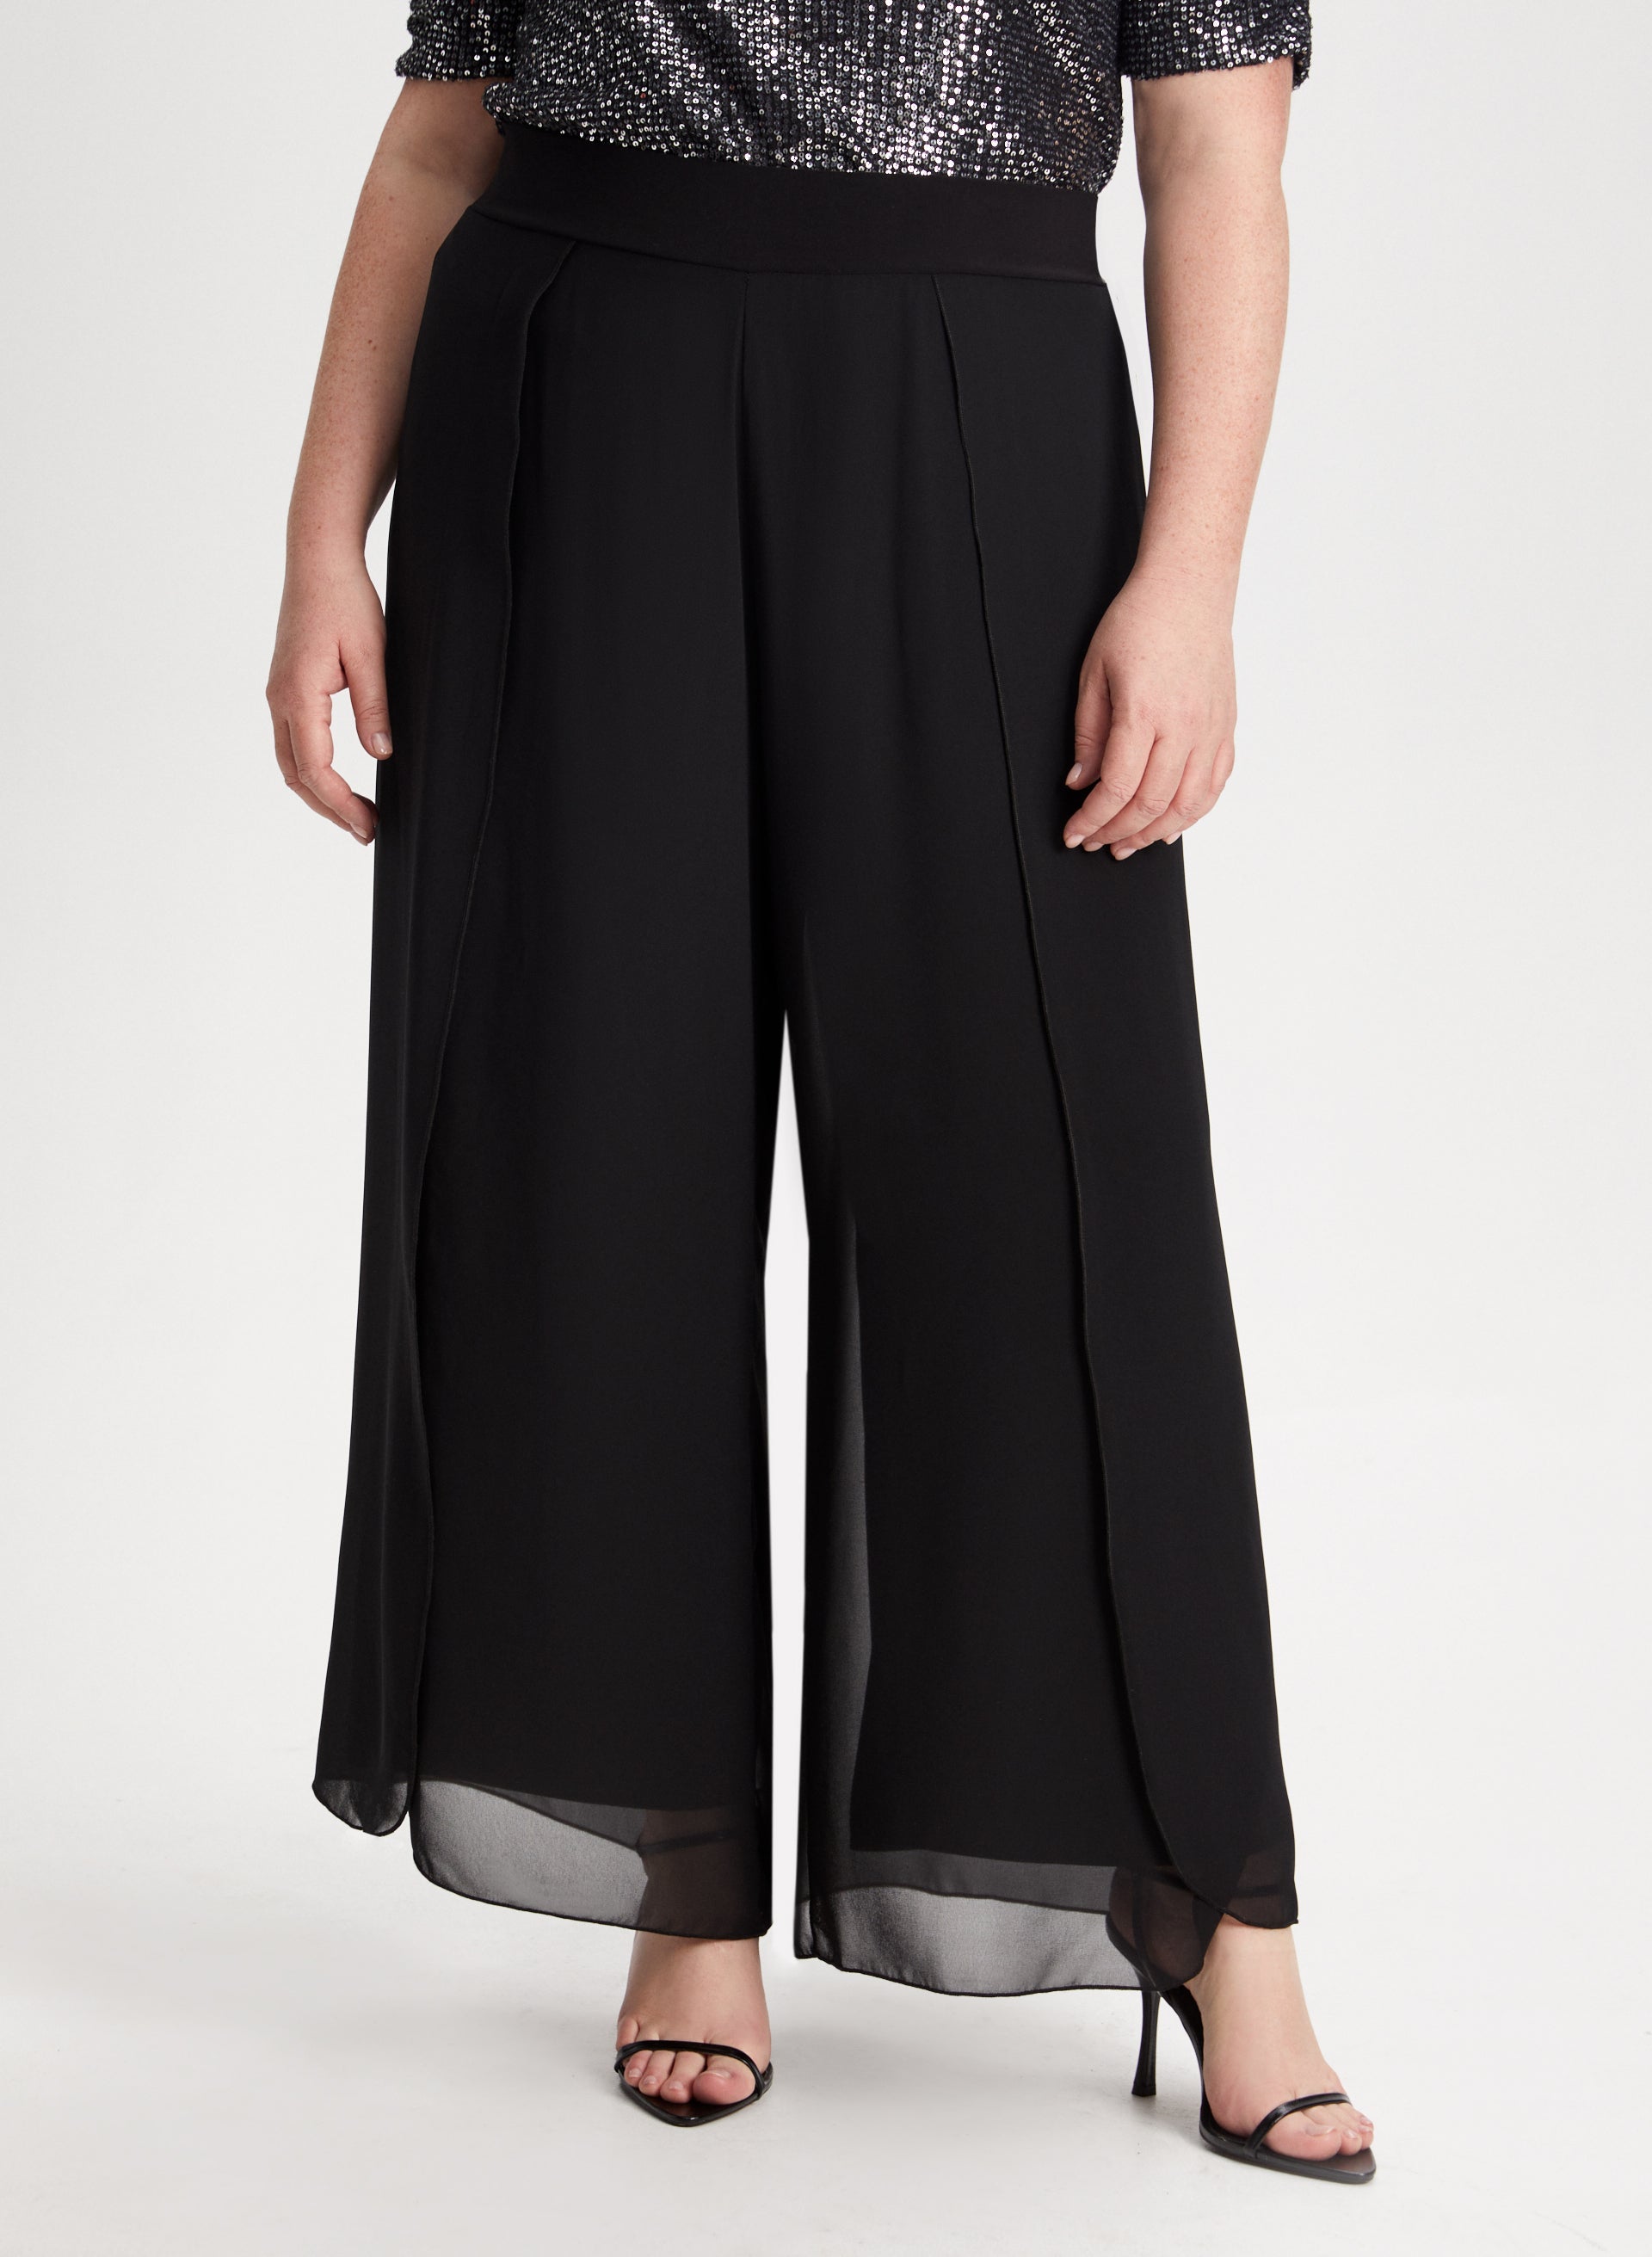 Plus Size Women's Long Stretch Pants (XL/2XL ONE SIZE) ITALIAN FASHION  IMC22810